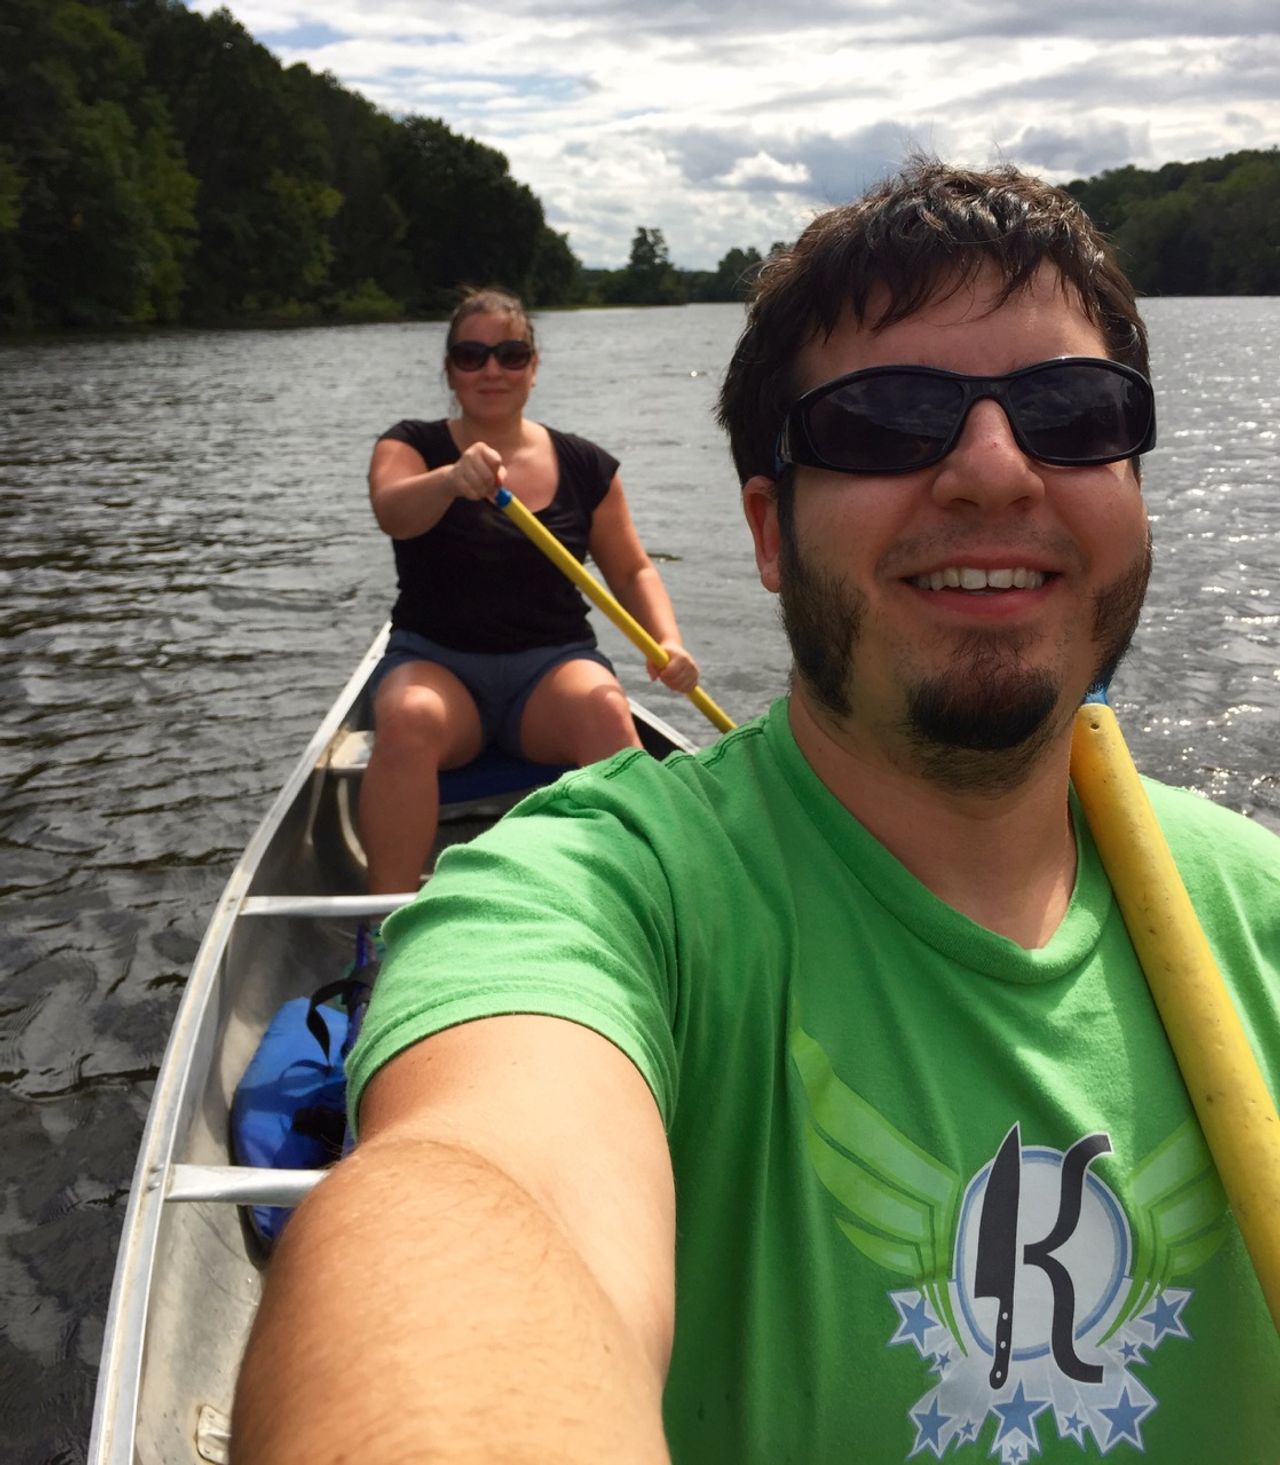 Chris and Karin kayaking in Ann Arbor, Michigan